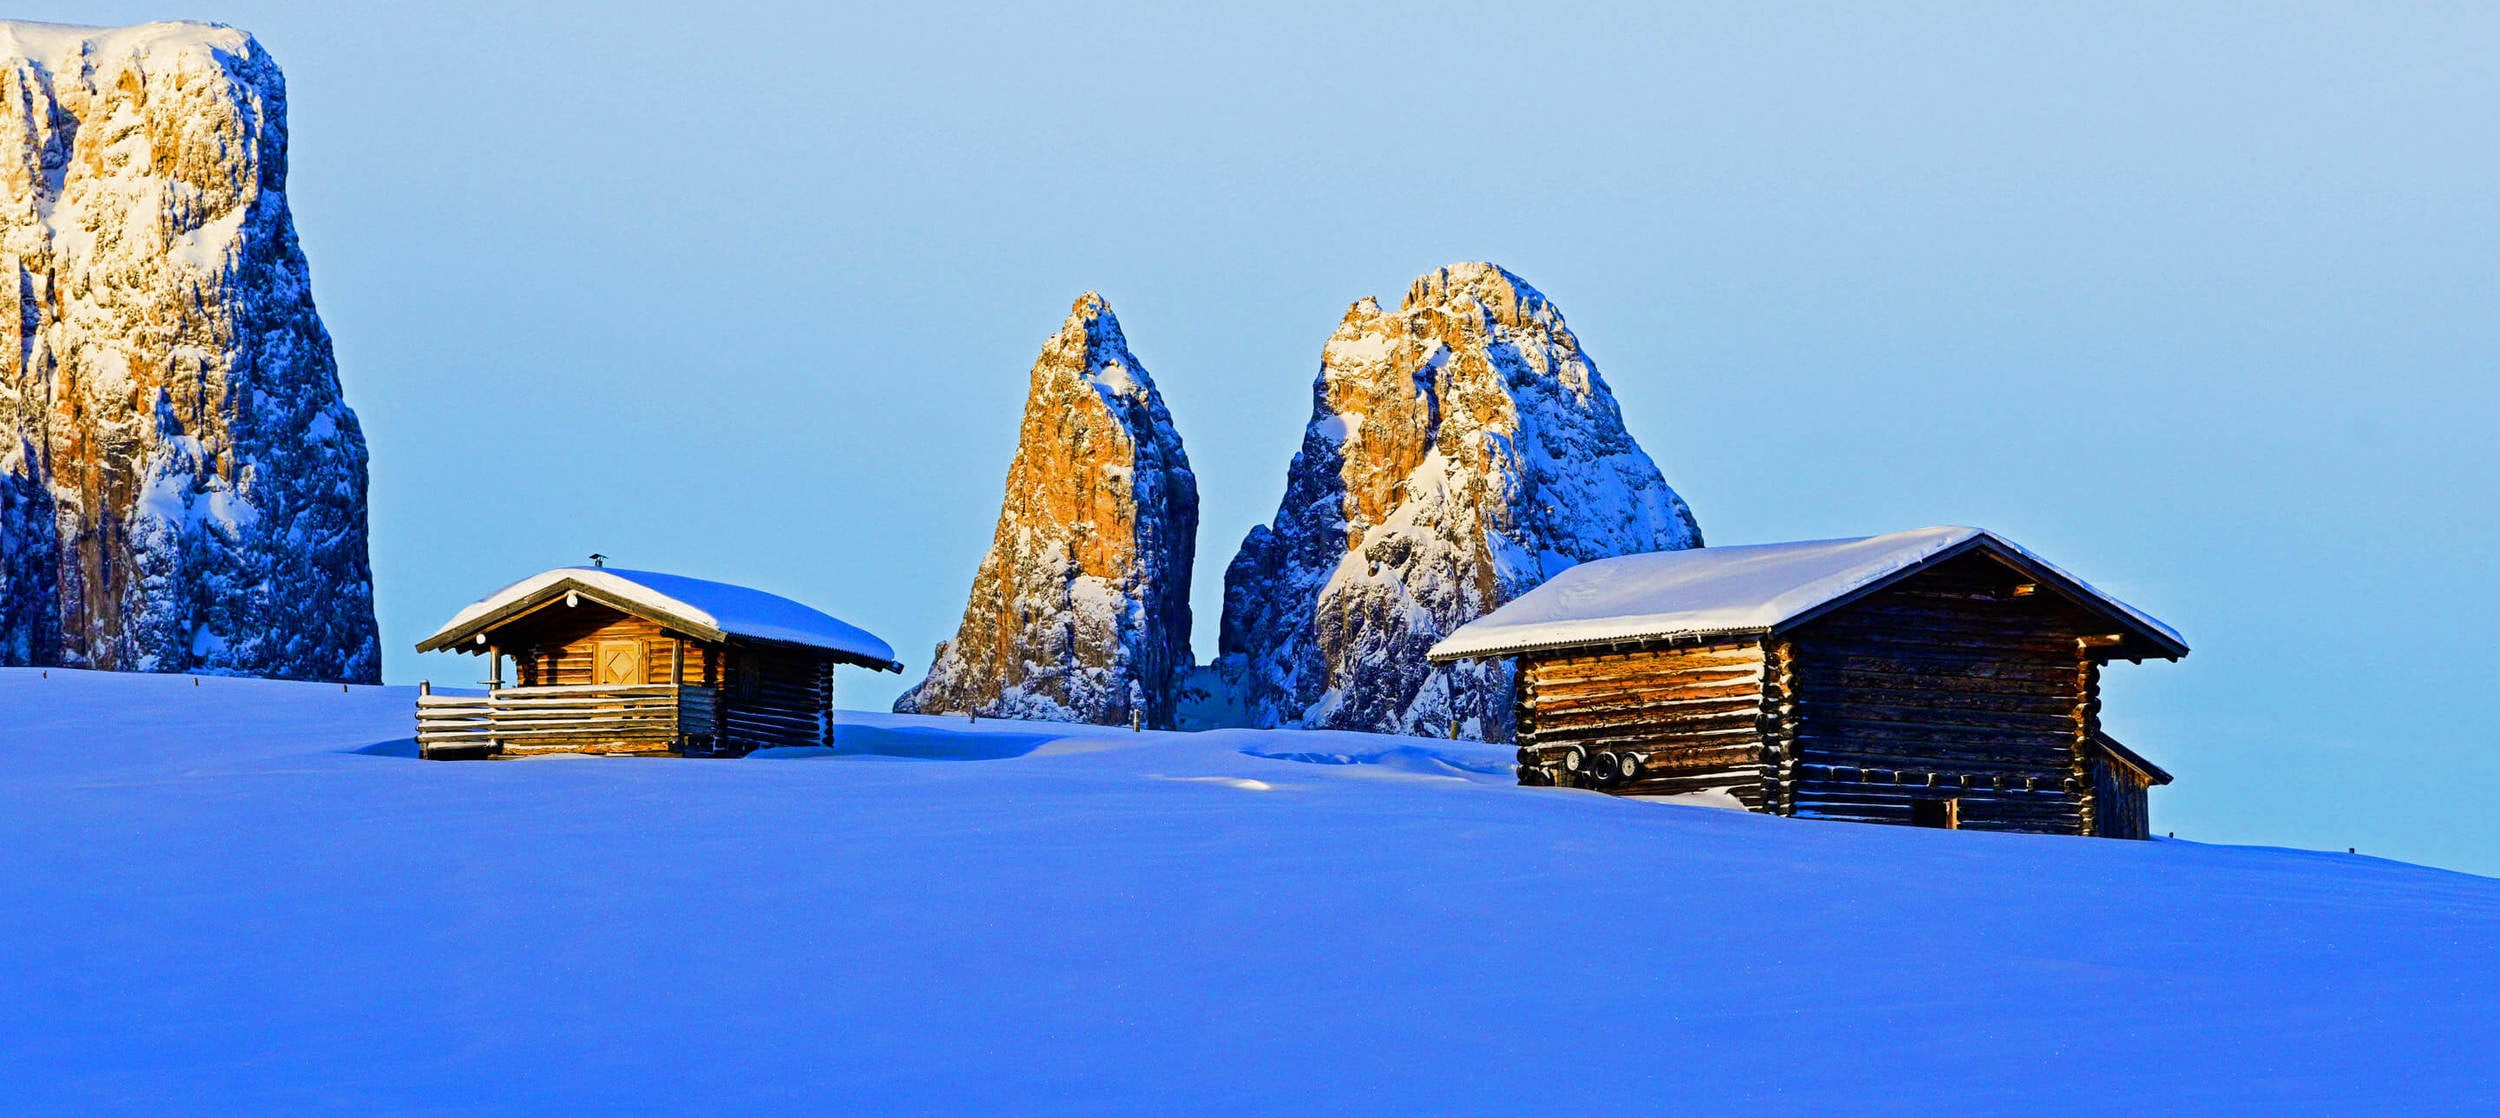 Winter dreams on Alpe di Siusi